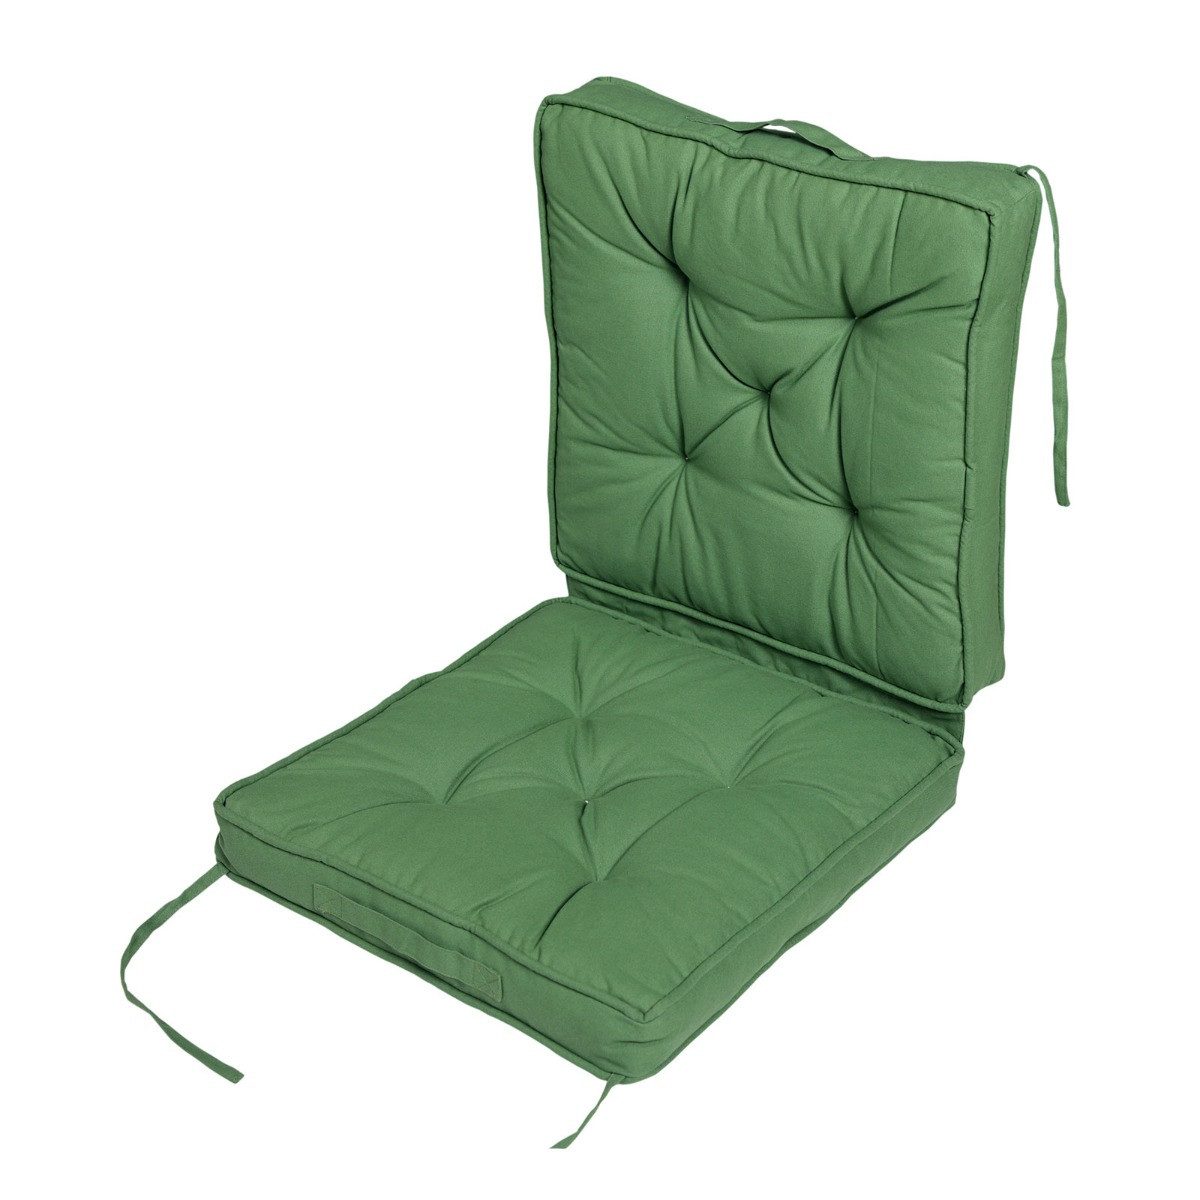 Homescapes Sitzkissen Reisekissen grün 50 x 50 cm – klappbares Sitzkissen Auto